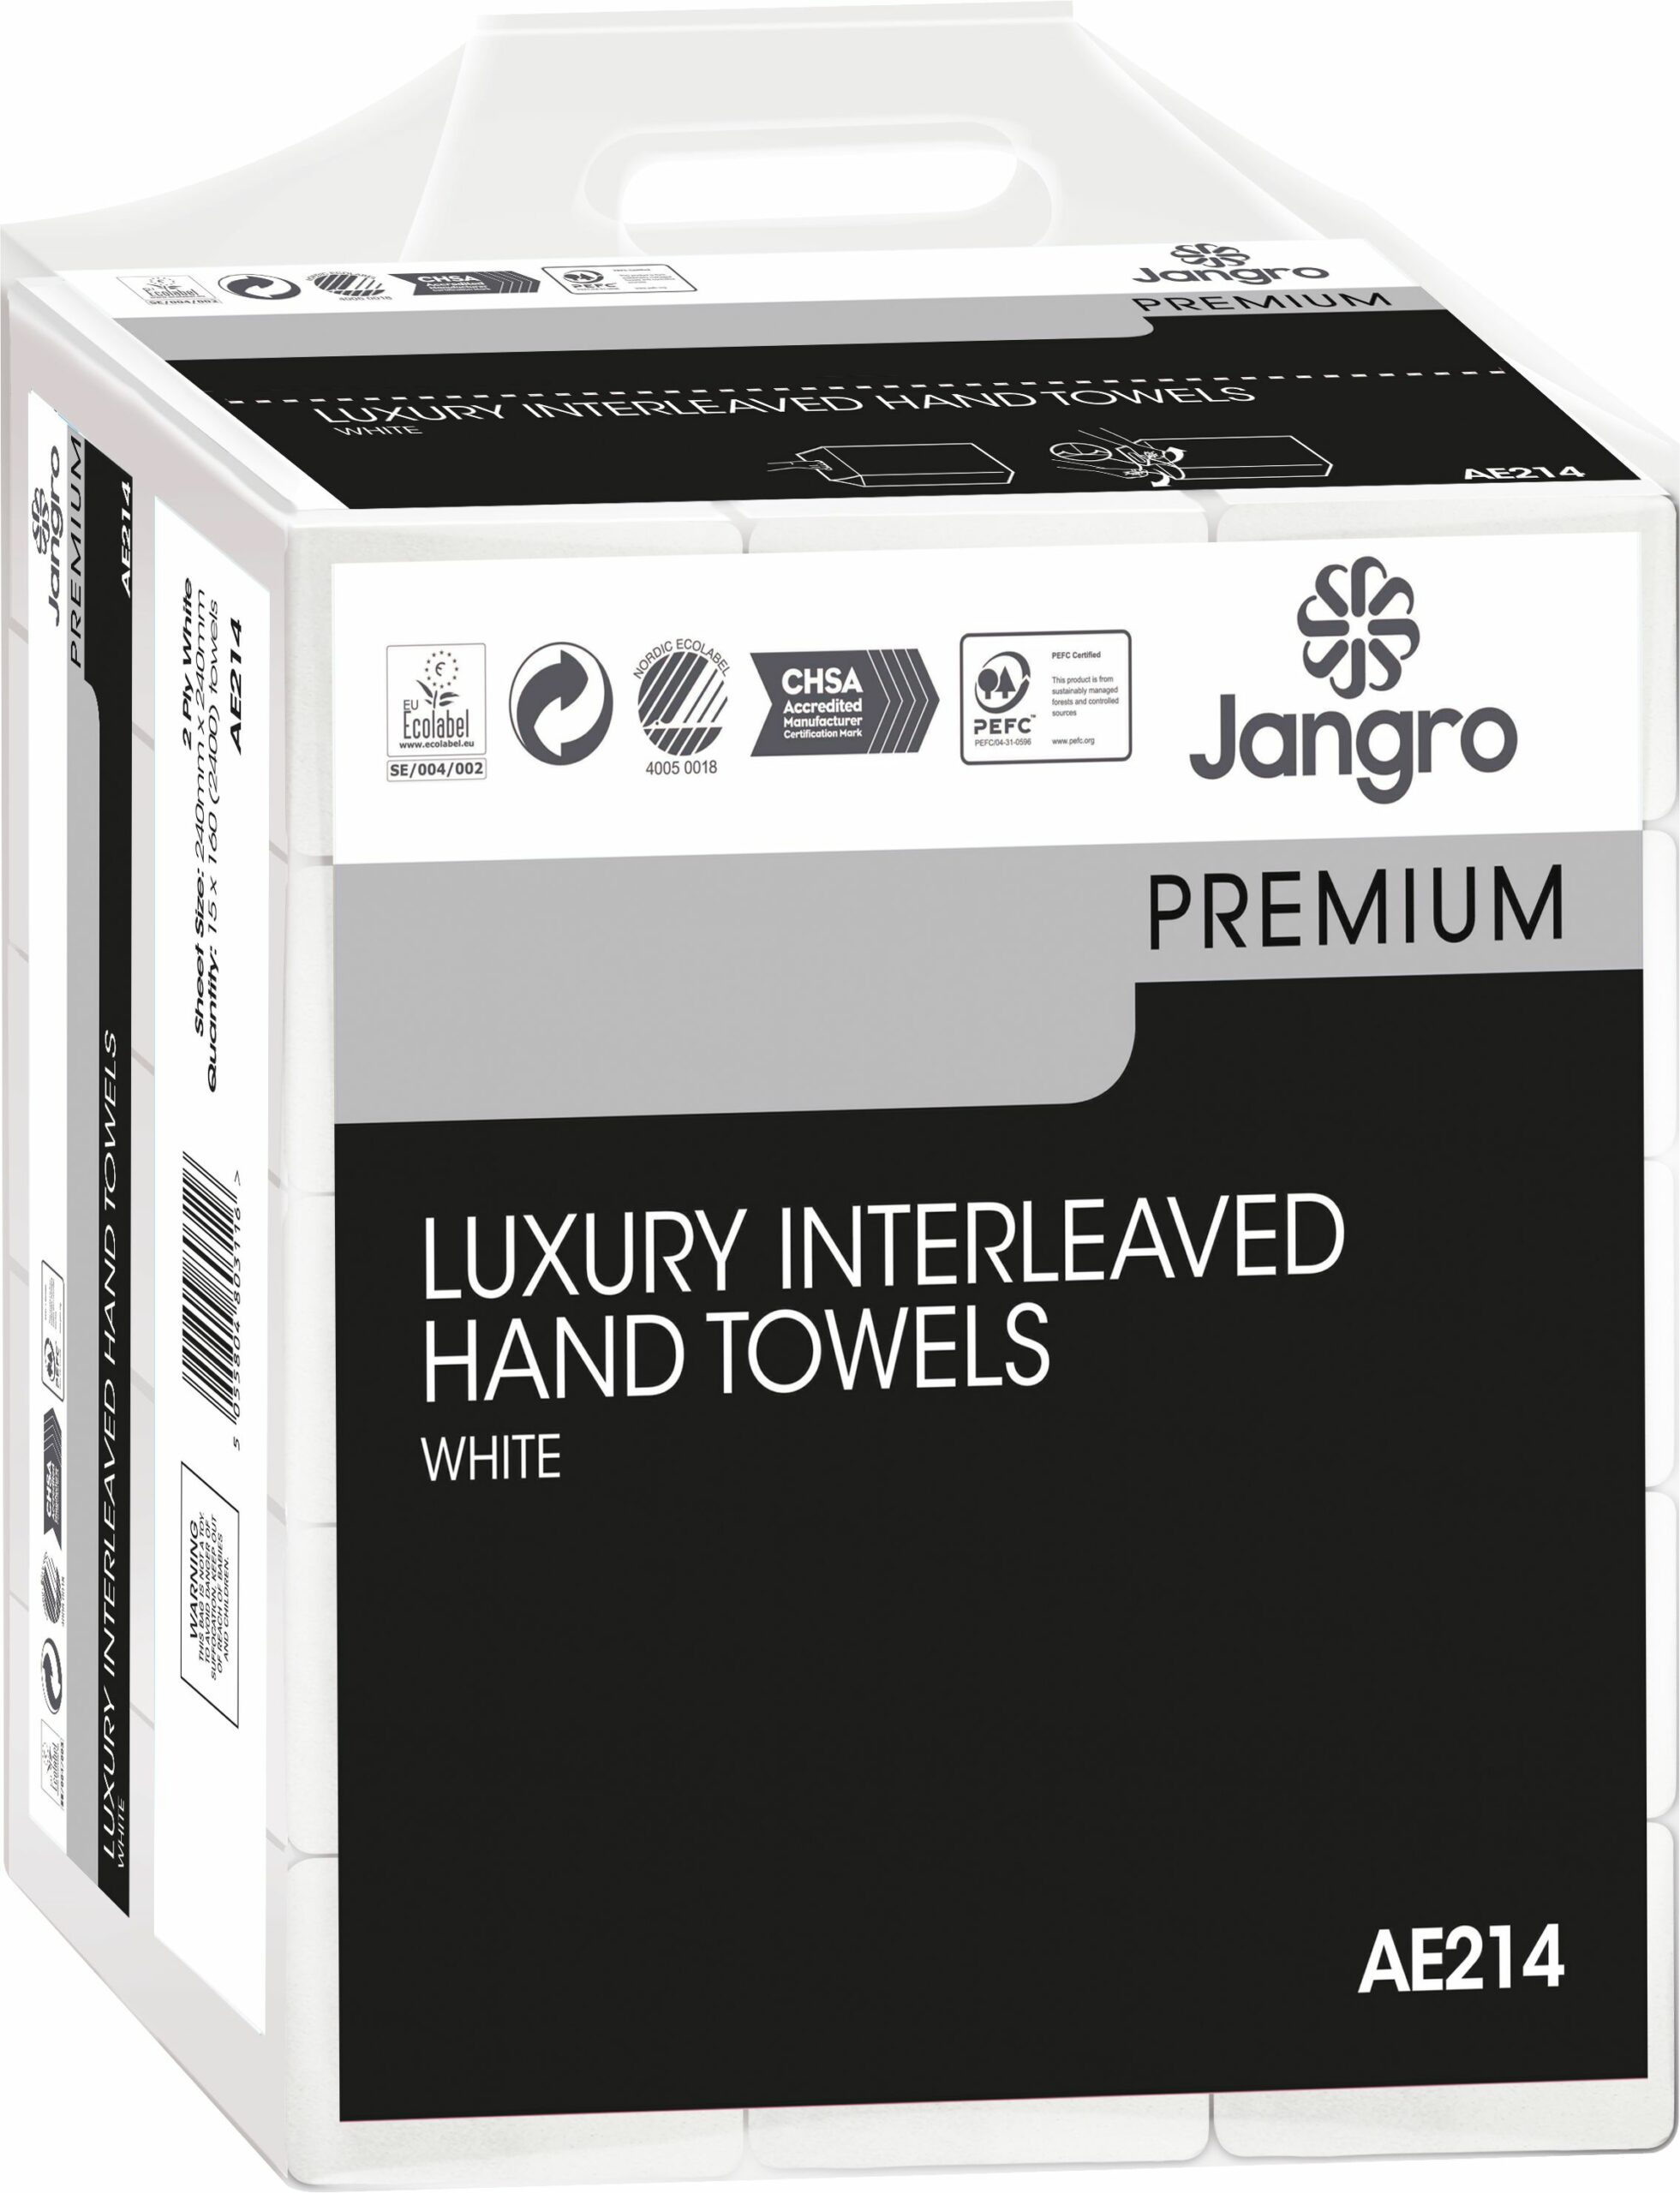 Jangro Luxury Interleaved Hand Towels 2-Ply - White